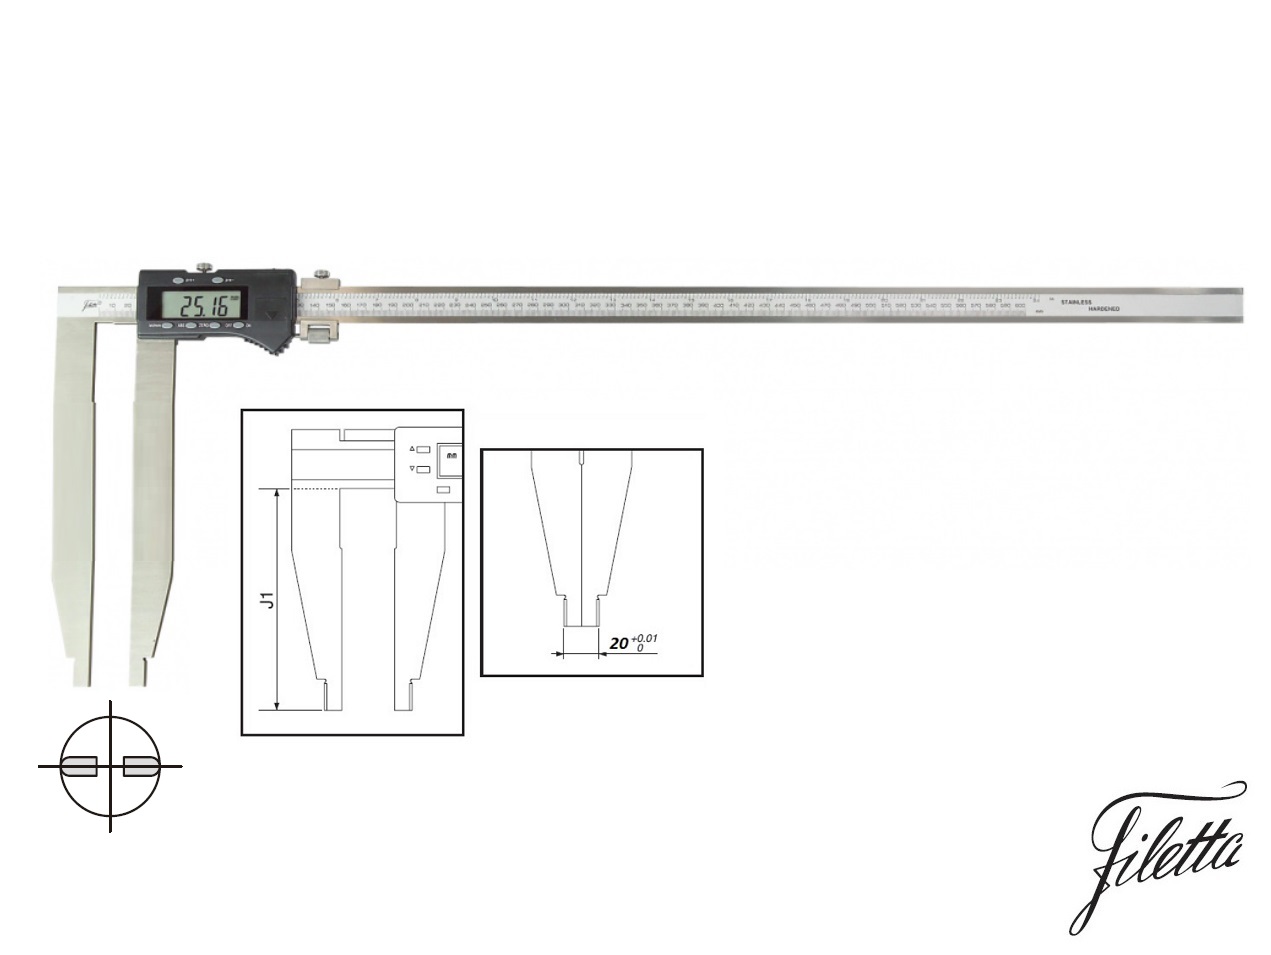 Digitální posuvné měřítko Filetta 0-500 mm bez nožíků, s měřicími čelistmi 200 mm